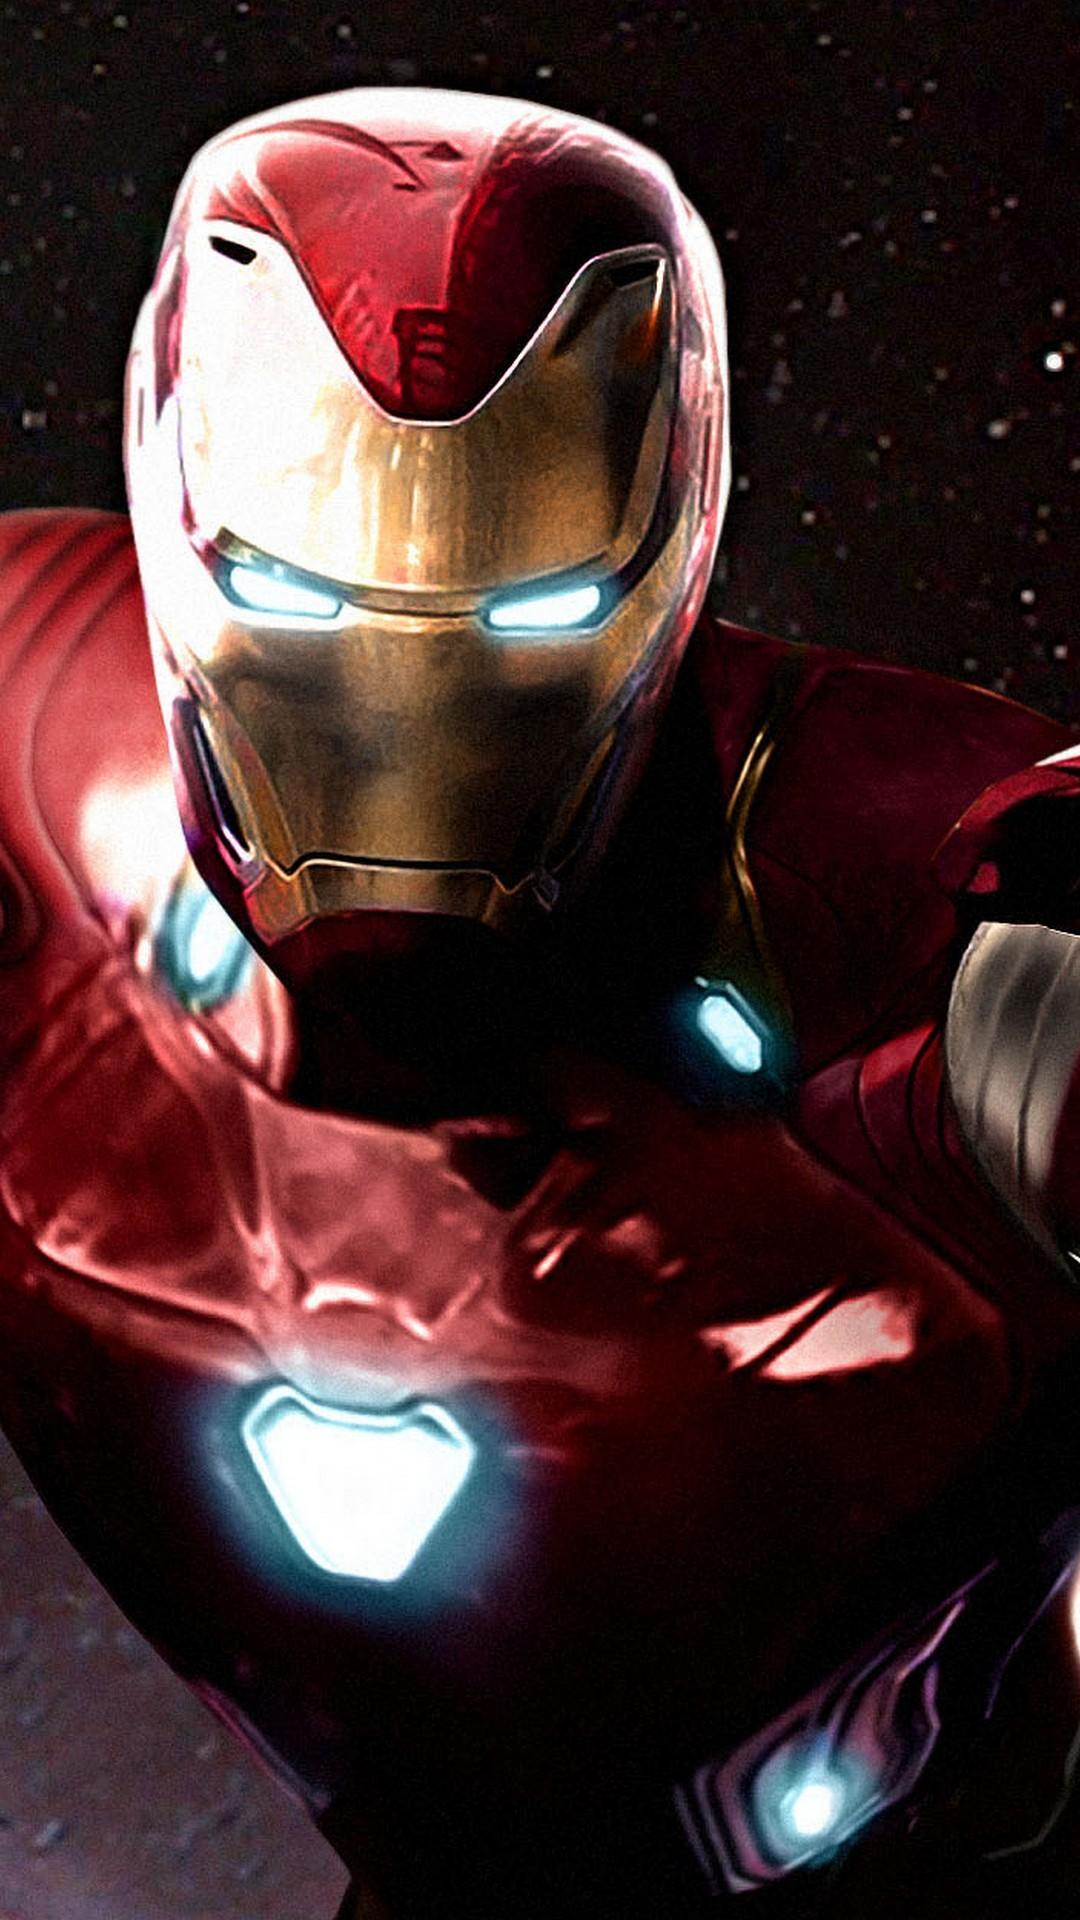 Iron Man Avengers Infinity War iPhone Wallpaper iPhone Wallpaper